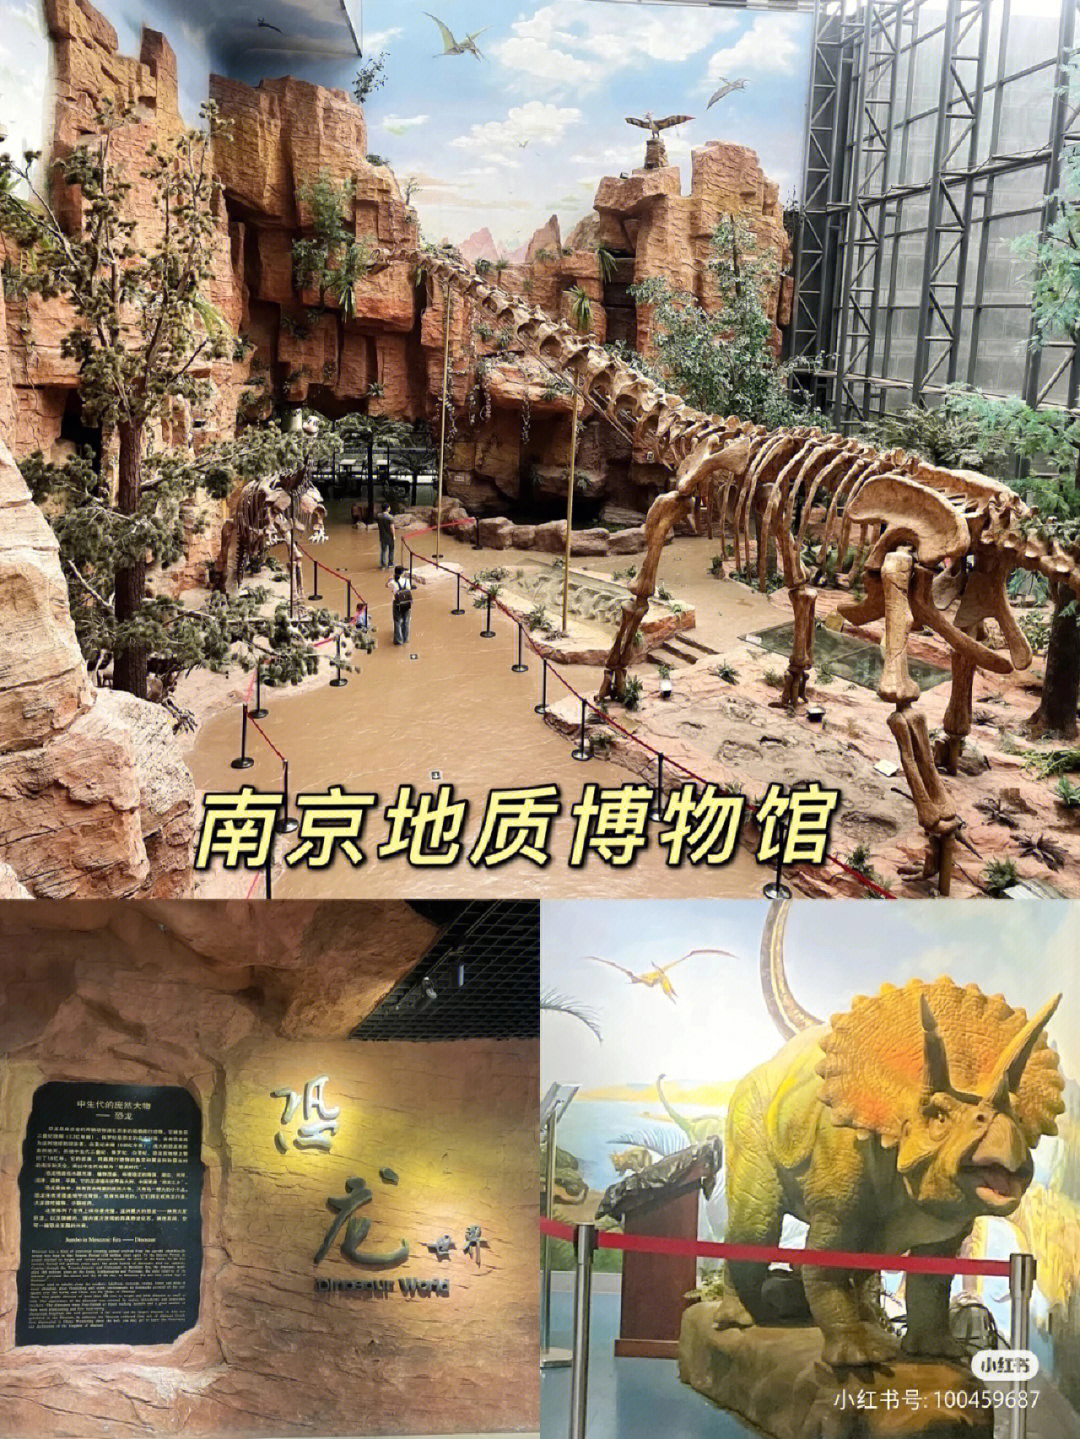 侏罗纪世界打卡地南京地质博物馆